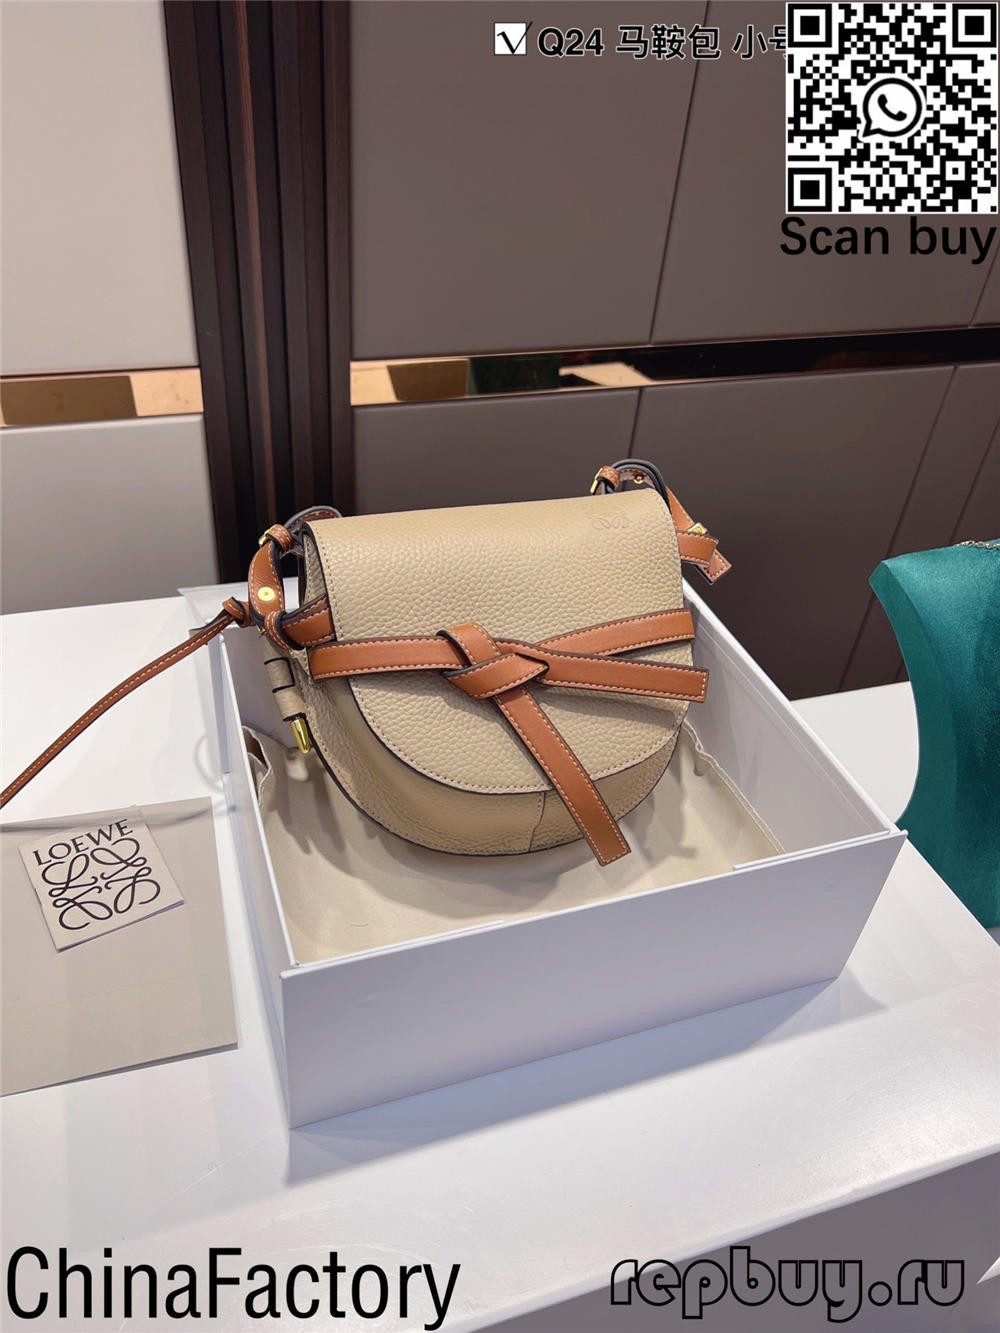 Top 5 guía de bolsas de réplica máis populares de Loewe (actualización de 2022) - Tenda en liña de bolsas Louis Vuitton falsas de mellor calidade, réplica de bolsas de deseño ru